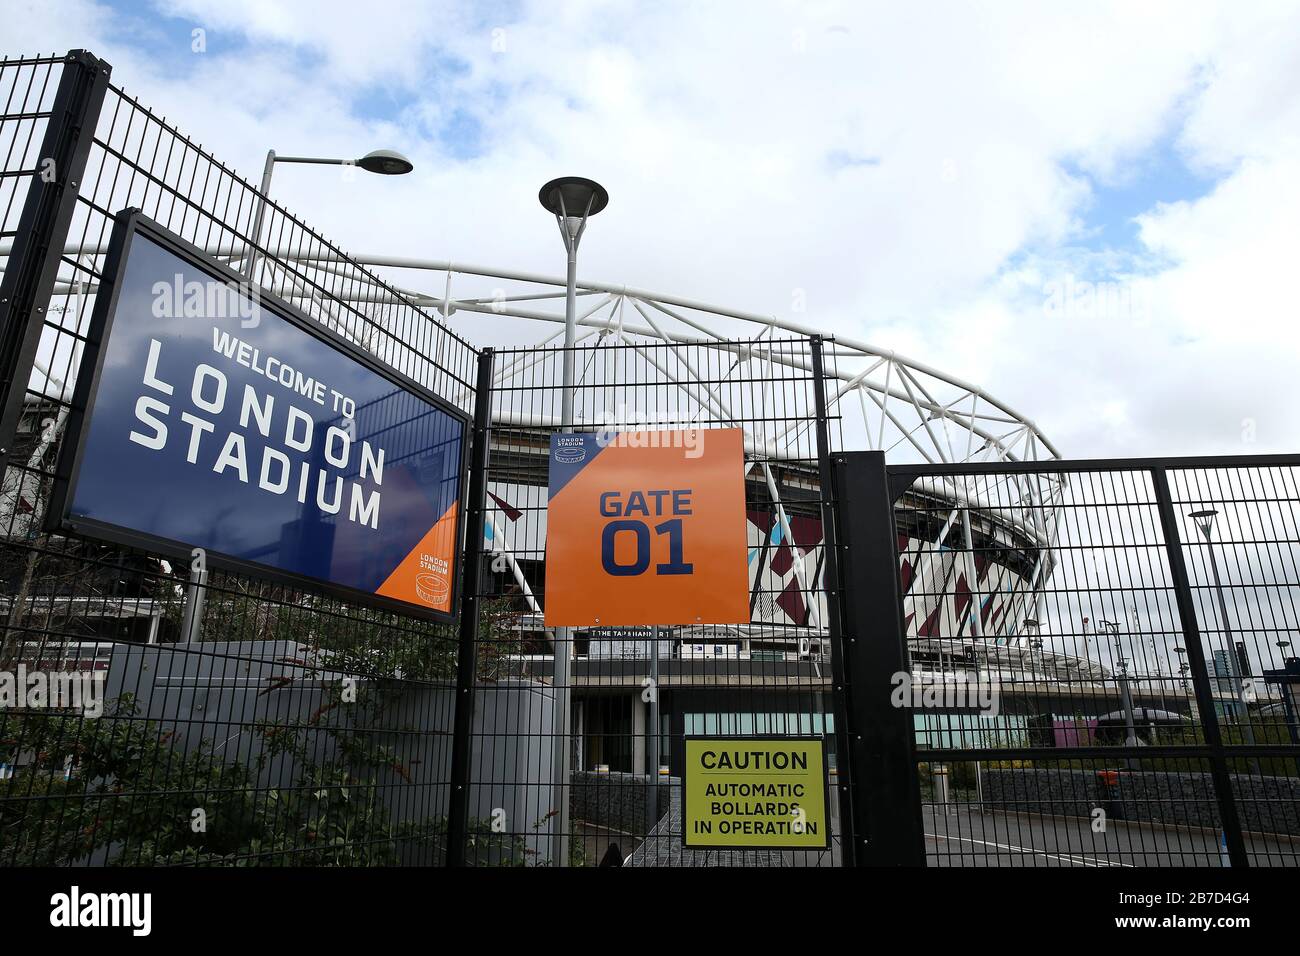 Vue sur les portes fermées devant le stade de Londres, où se trouve le club de football West Ham United, suite à l'annonce de vendredi que la Premier League a suspendu tous les matchs jusqu'au samedi 4 avril 2020. Banque D'Images